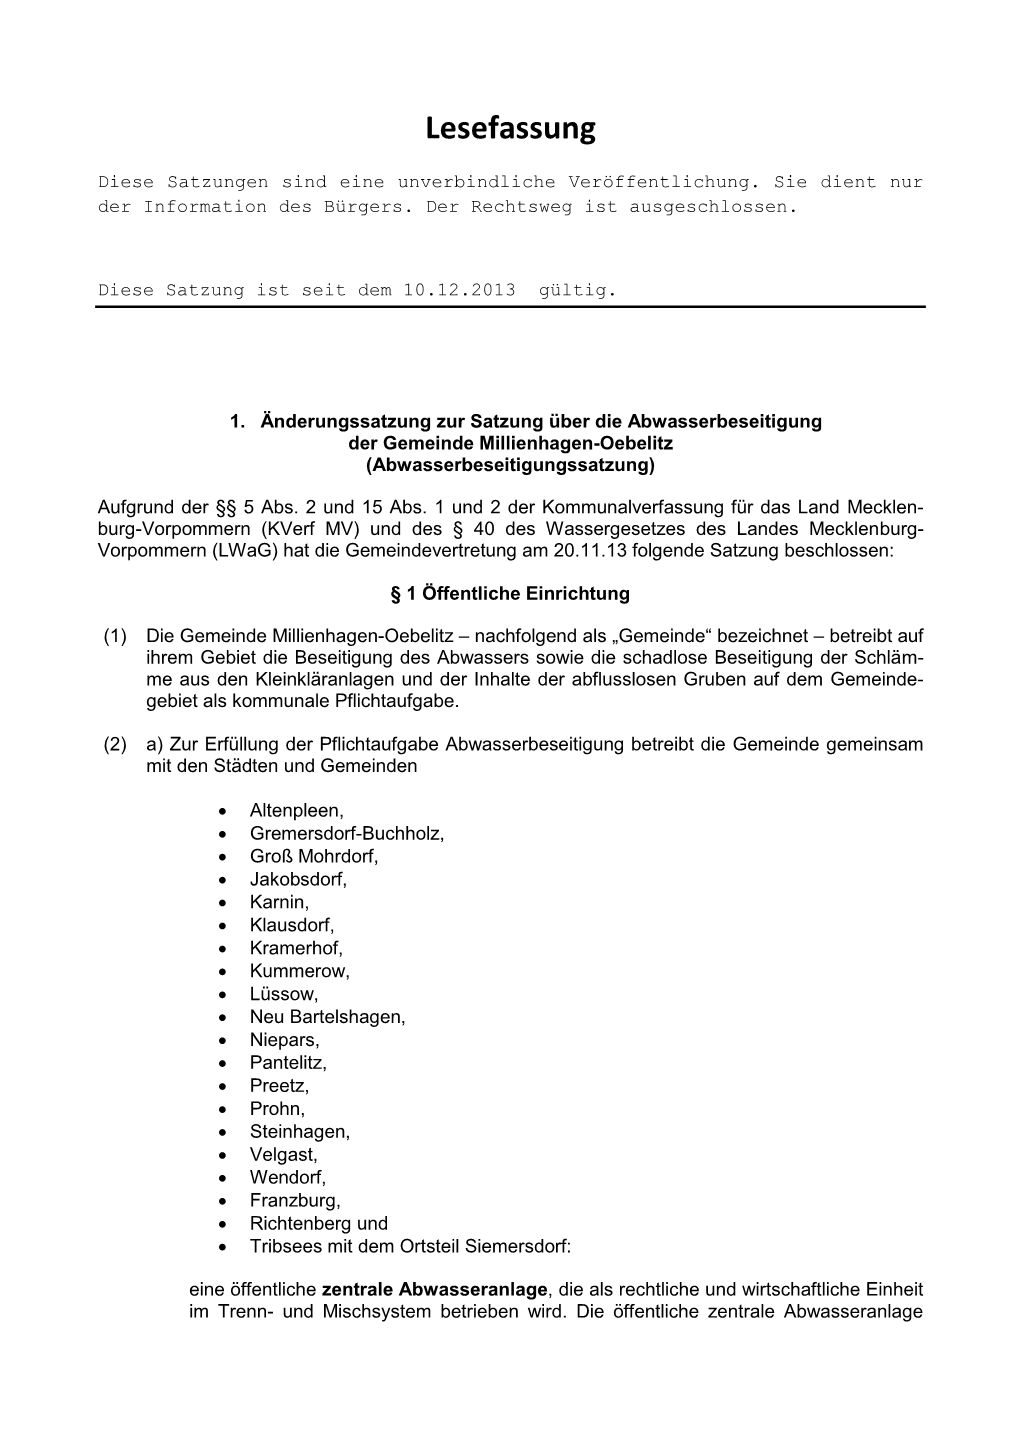 Satzung Über Die Abwasserbeseitigung Der Gemeinde Millienhagen-Oebelitz (Abwasserbeseitigungssatzung)